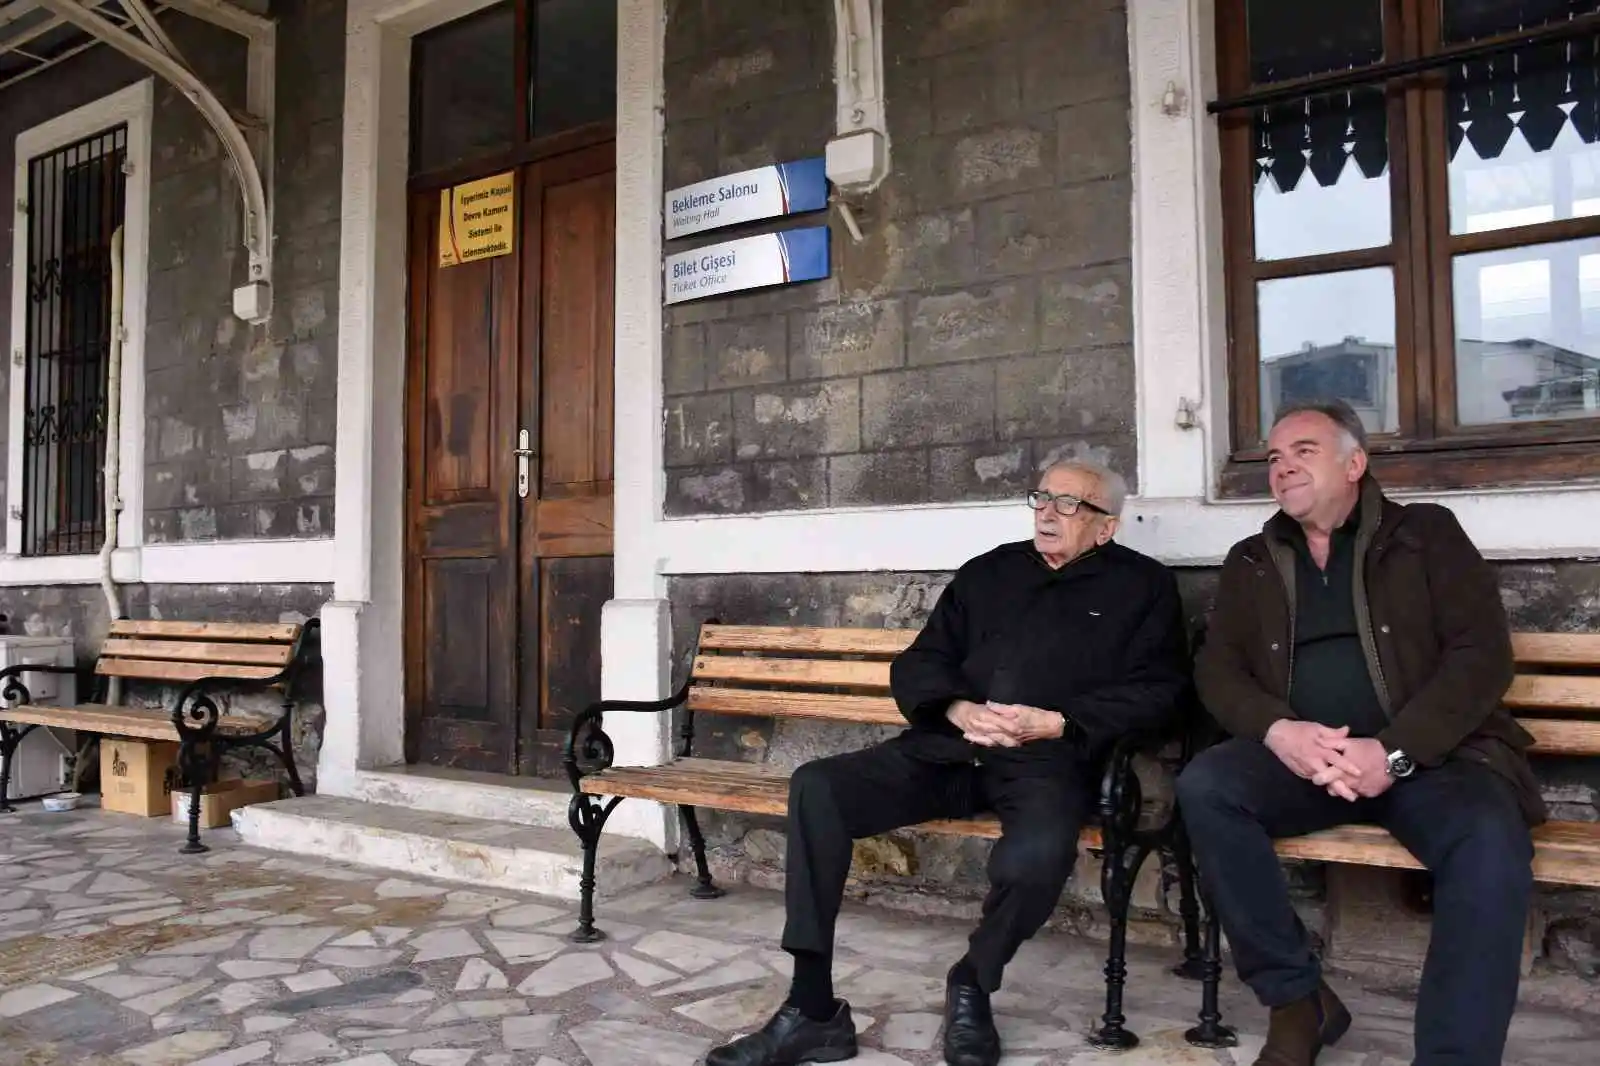 Yazar Benazus, Atatürk'le tanıştığı yere 85 yıl sonra geldi
